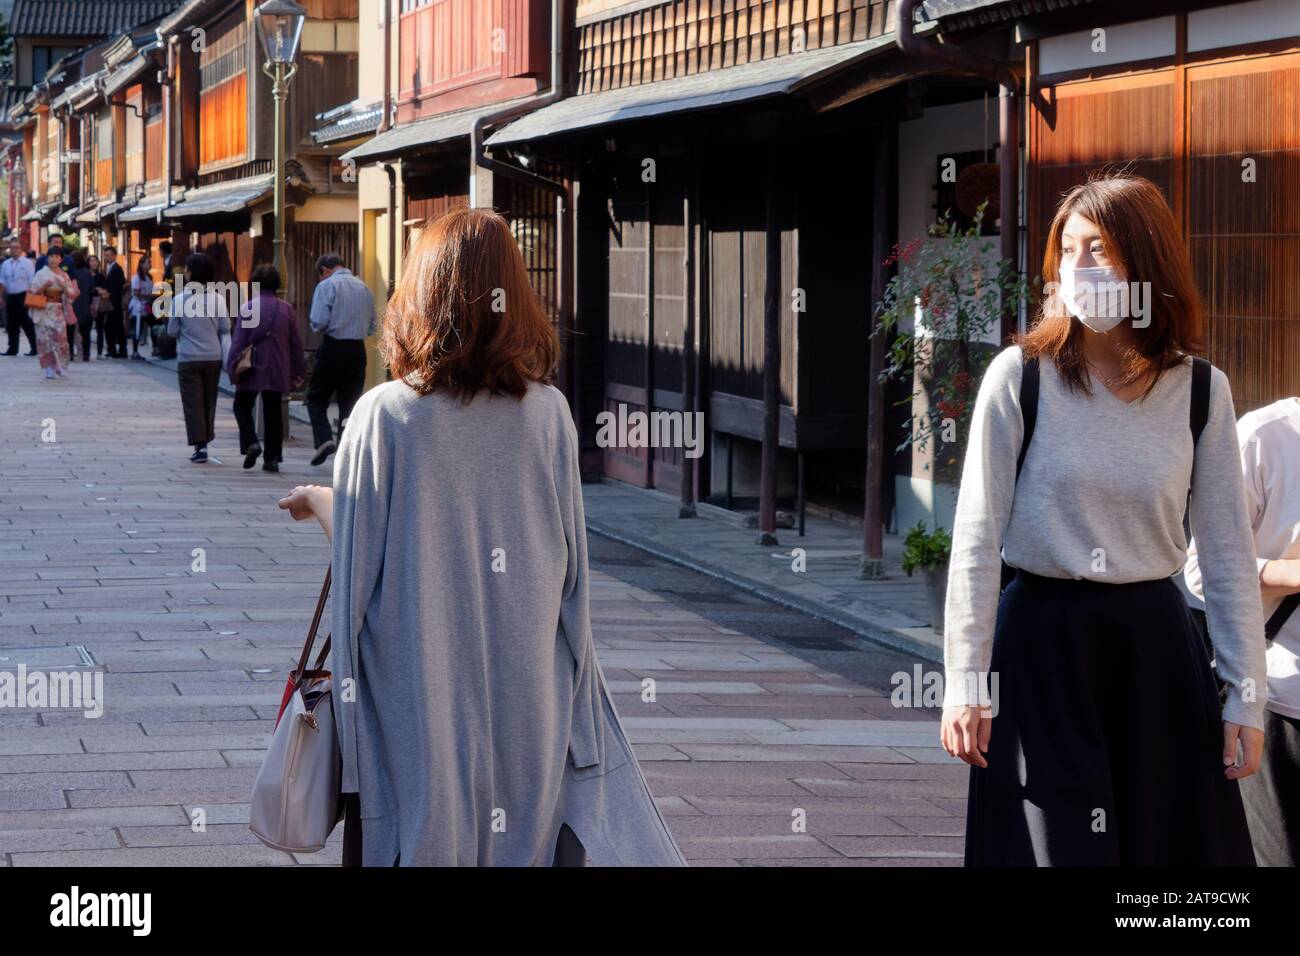 Deux jeunes femmes, l'une portant un masque, dans le district de Higashi Chaya (district de Teahouse de l'est) de Kanazawa. Banque D'Images